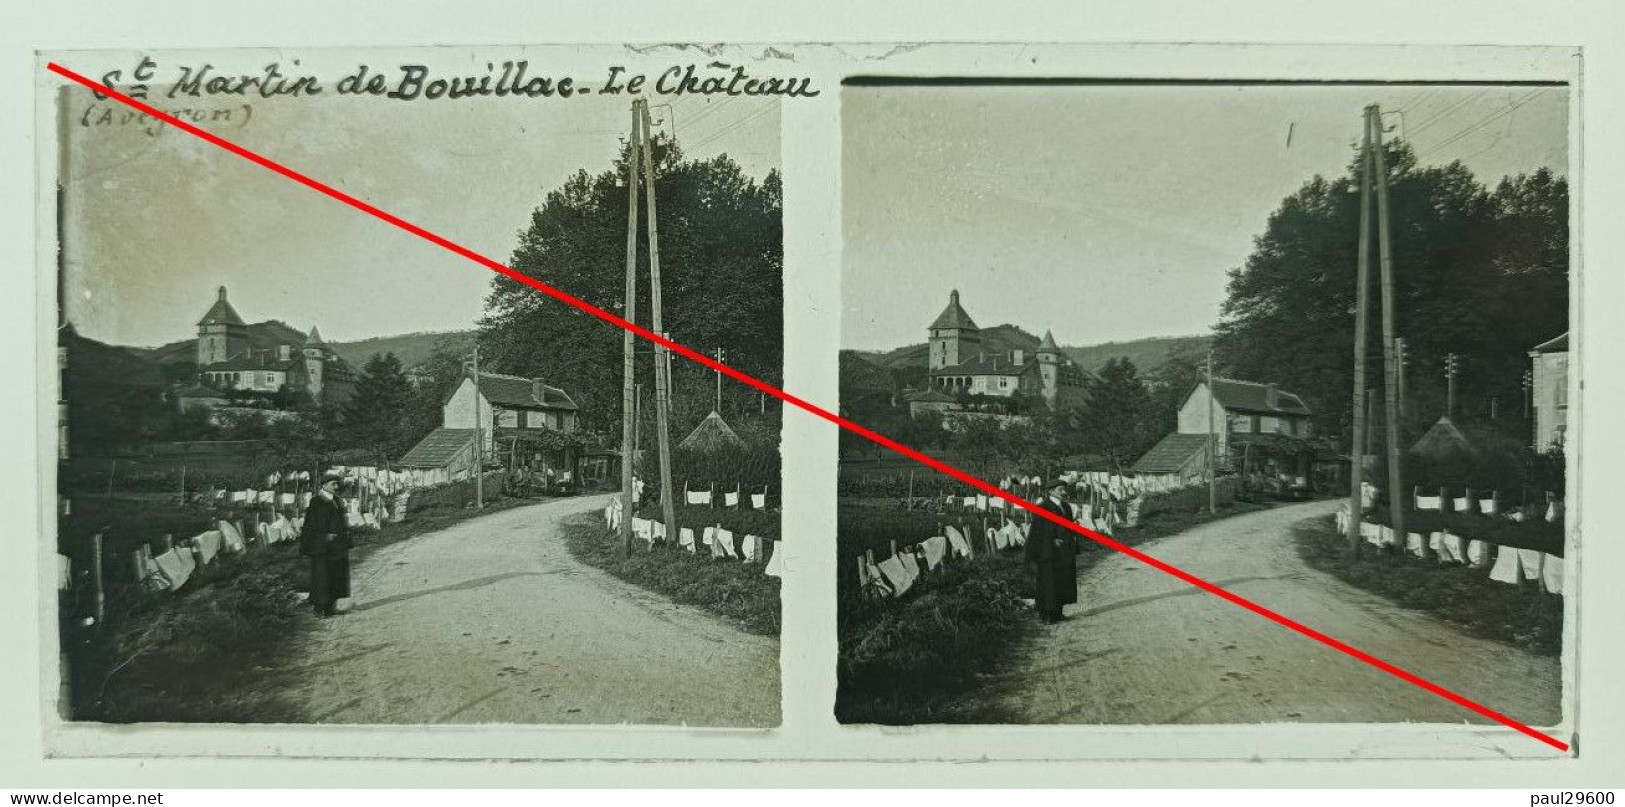 Photo Sur Plaque De Verre, Aveyron, Saint Martin De Bouillac, Le Château, Rue, Maison, Linge, Homme, Champs, Années 1930 - Diapositivas De Vidrio